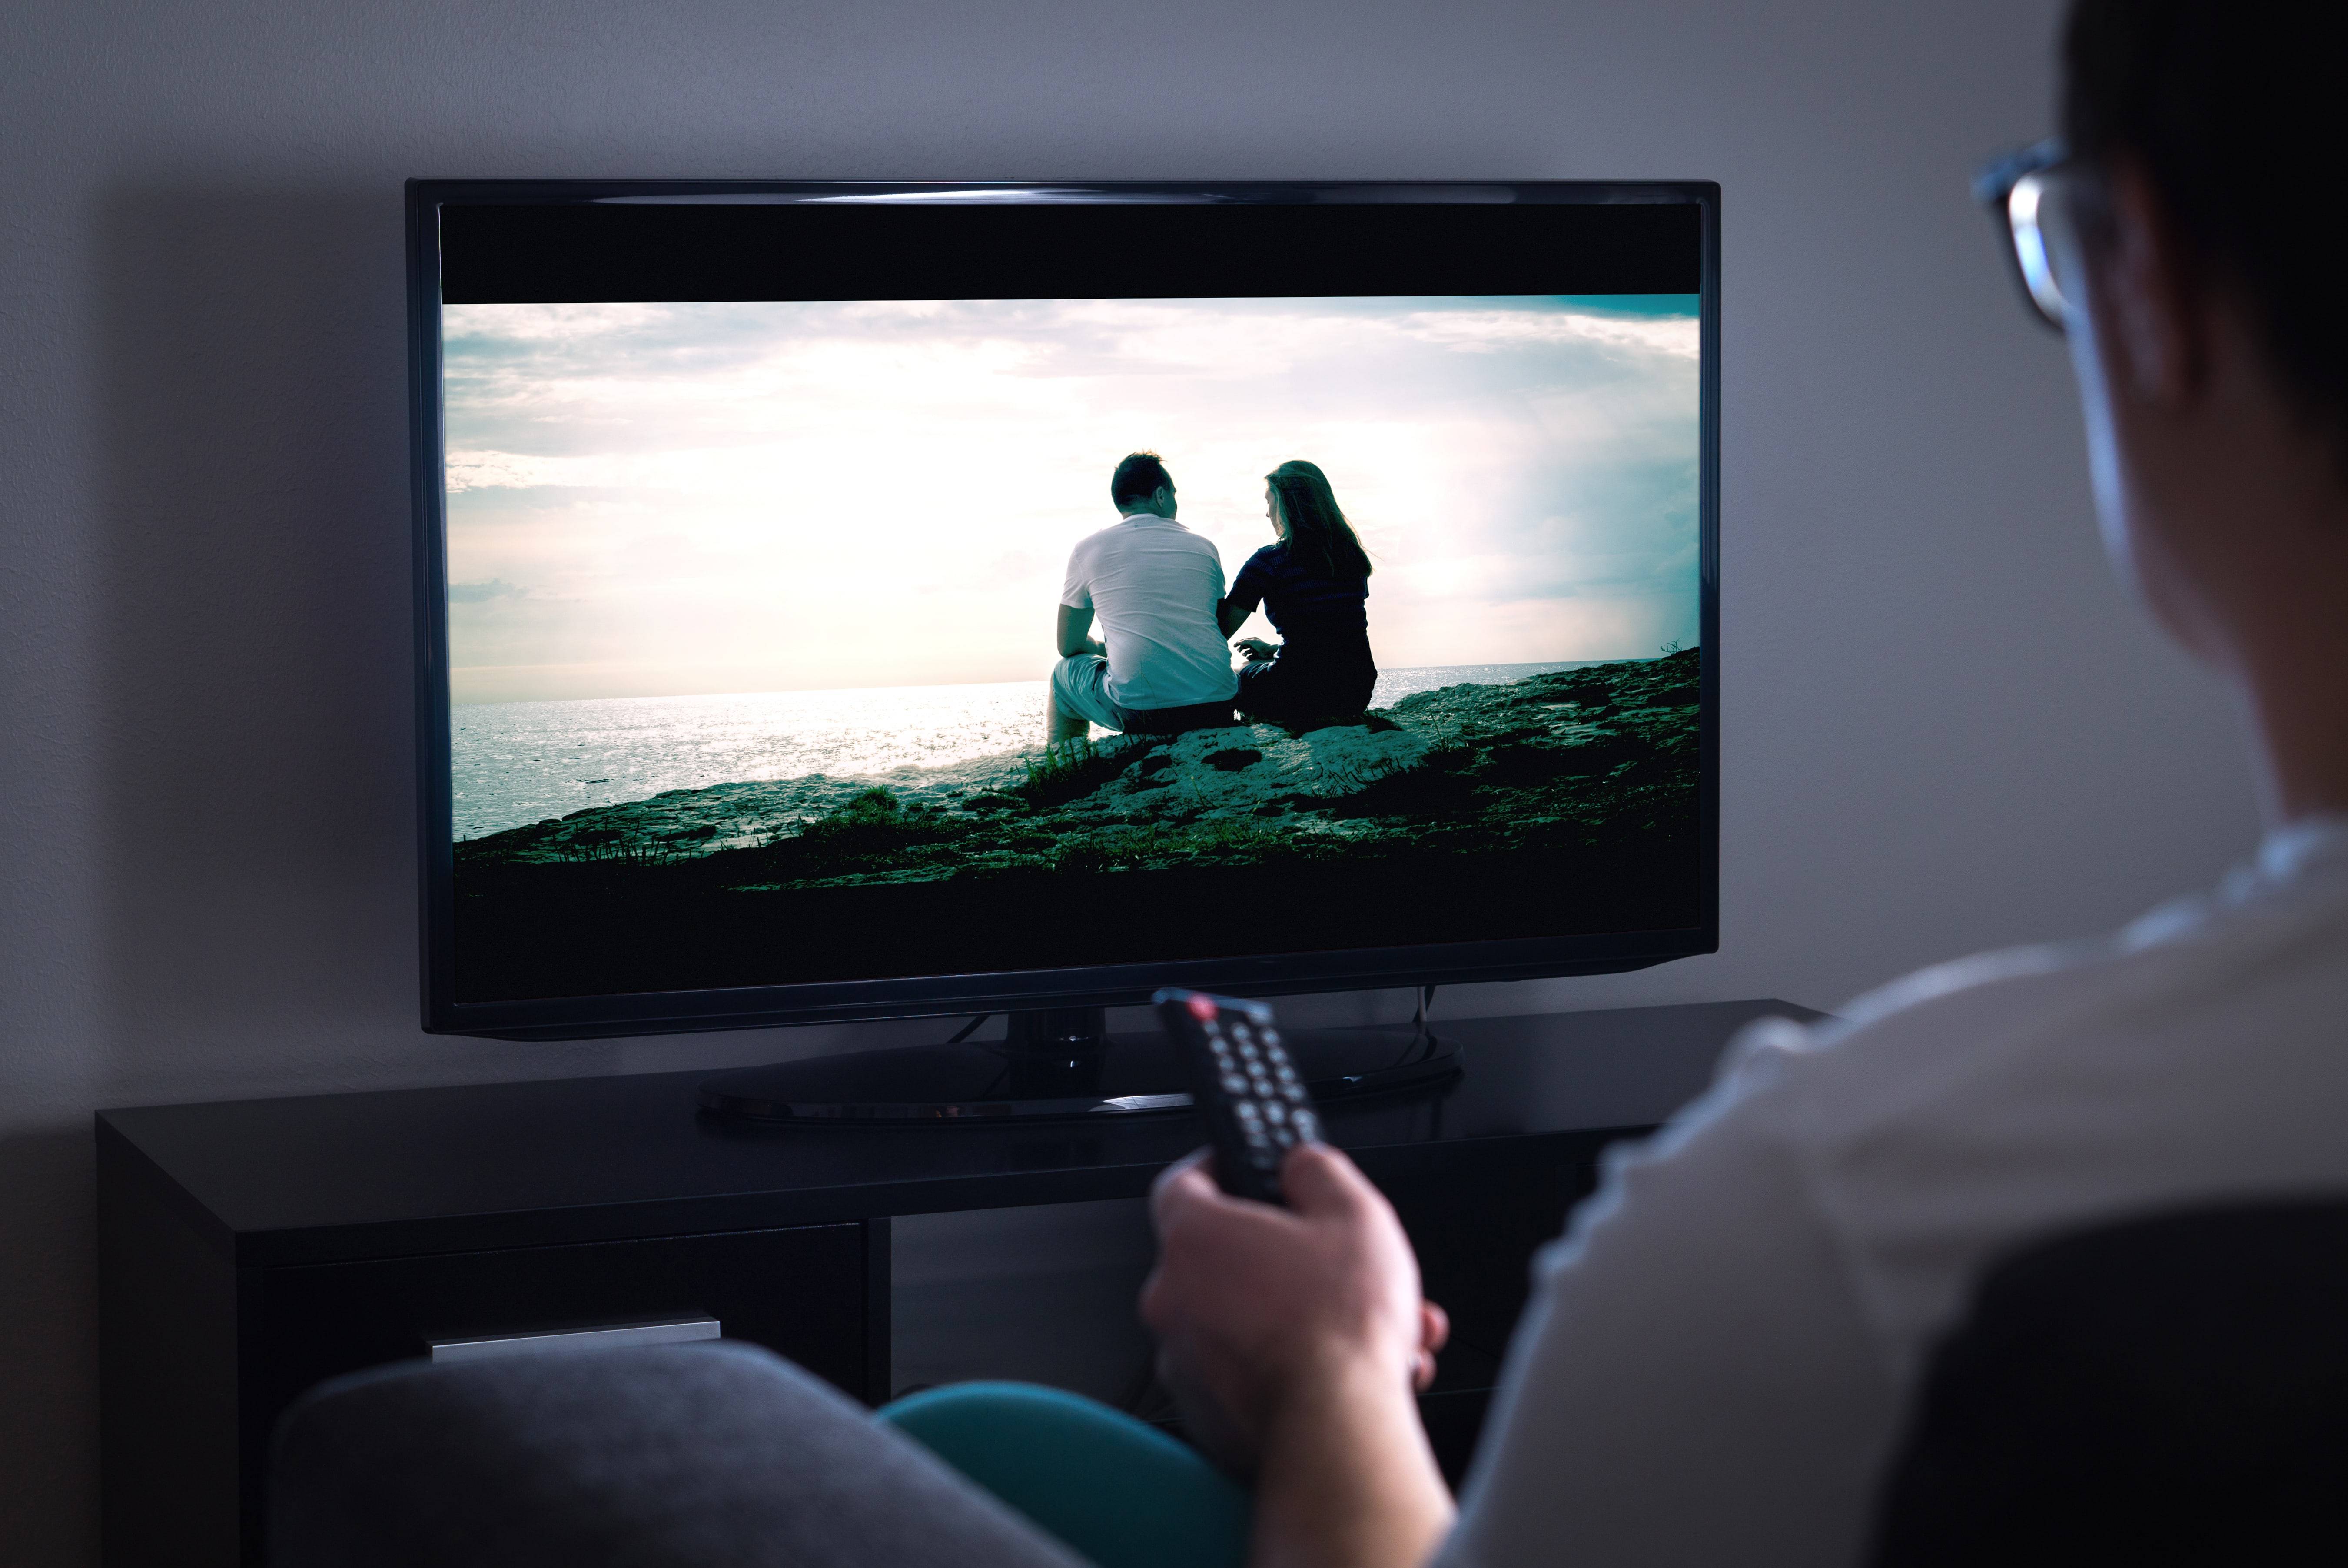 Какой телевизор считается наиболее вредоносным: жк или плазменный?